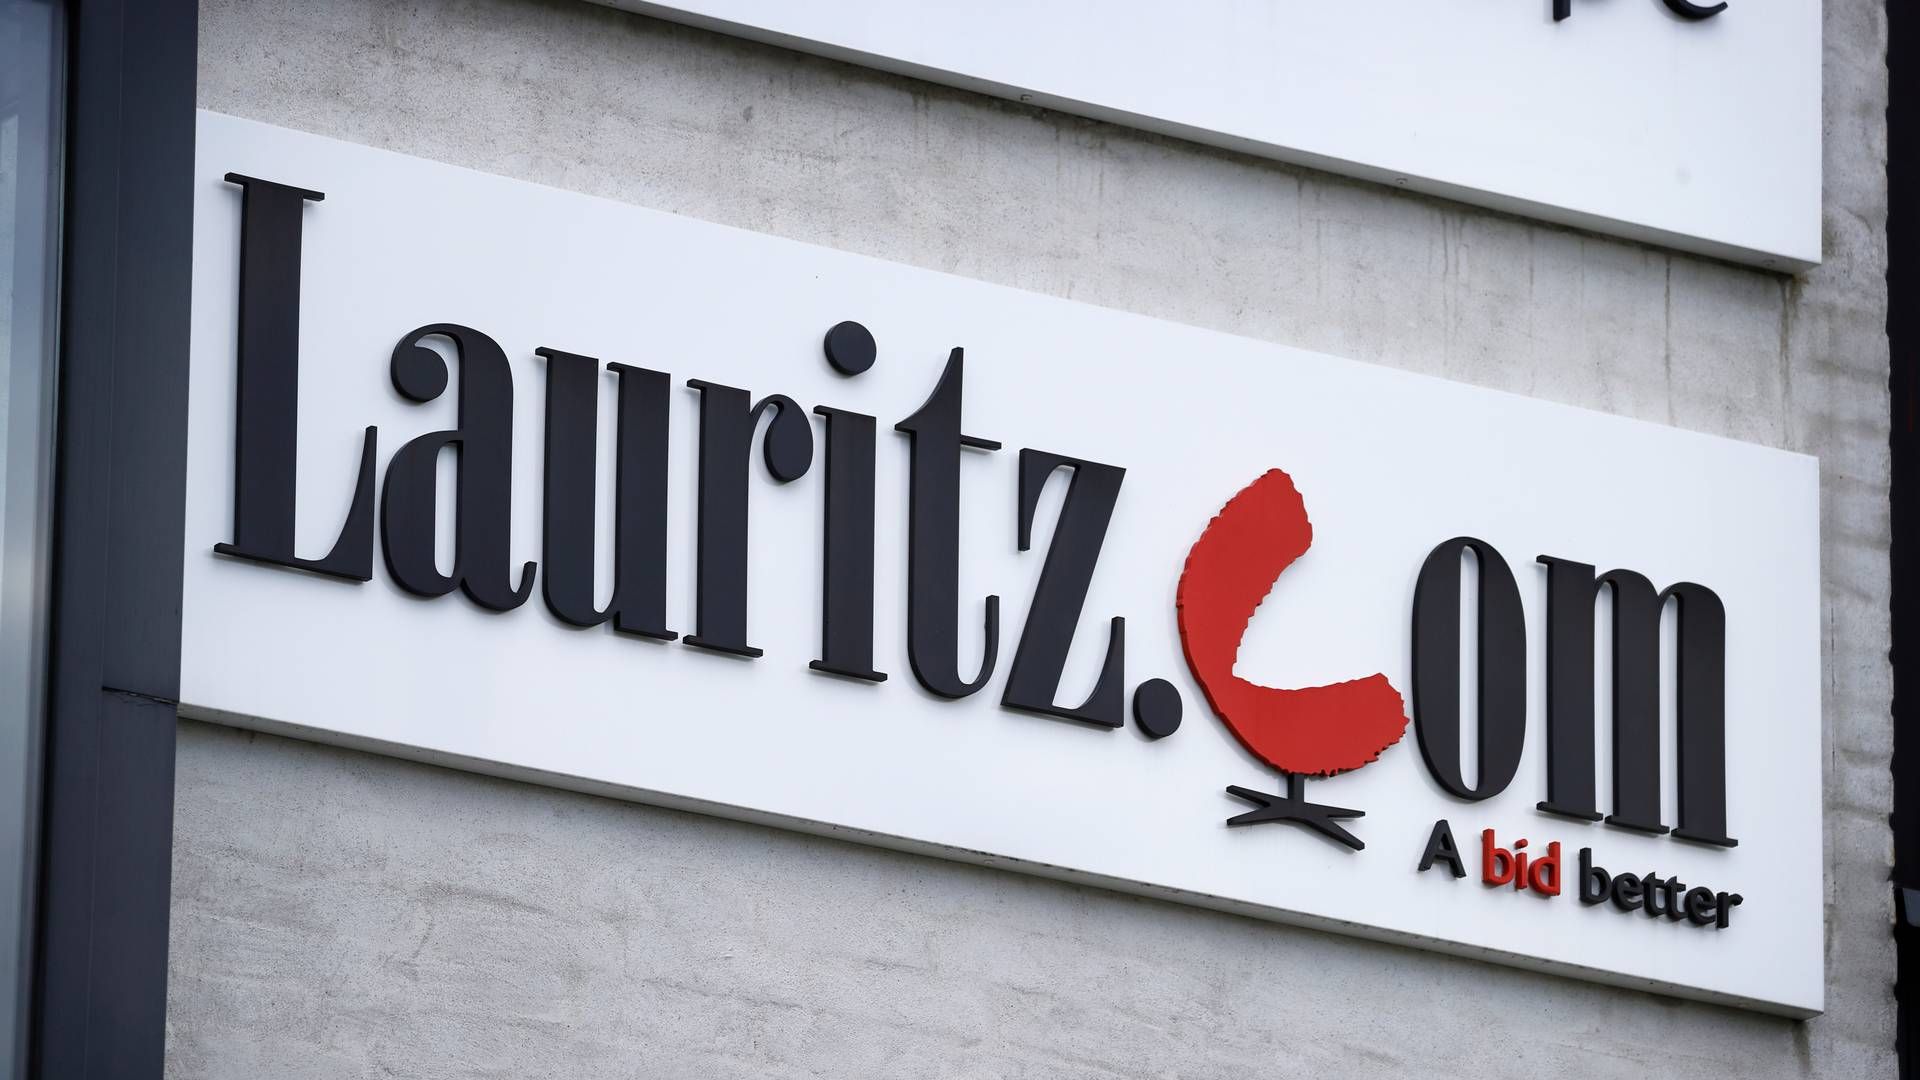 Auktionshuset Lauritz.com blev erklæret konkurs 11. juli. Nu er oprydningen i fuld gang. | Foto: Jens Dresling/Ritzau Scanpix